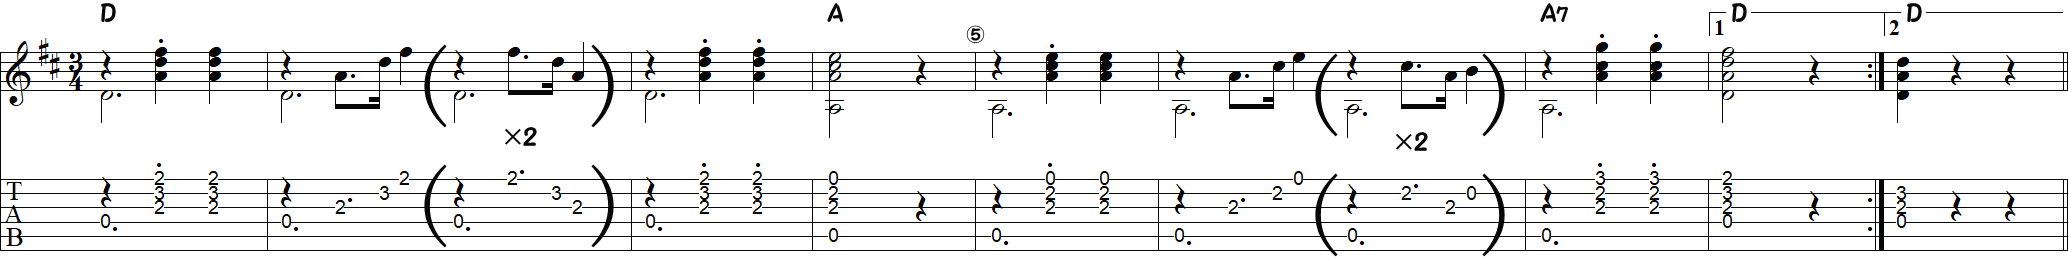 ラ・クカラチャ（伴奏1～9小節目）の譜面